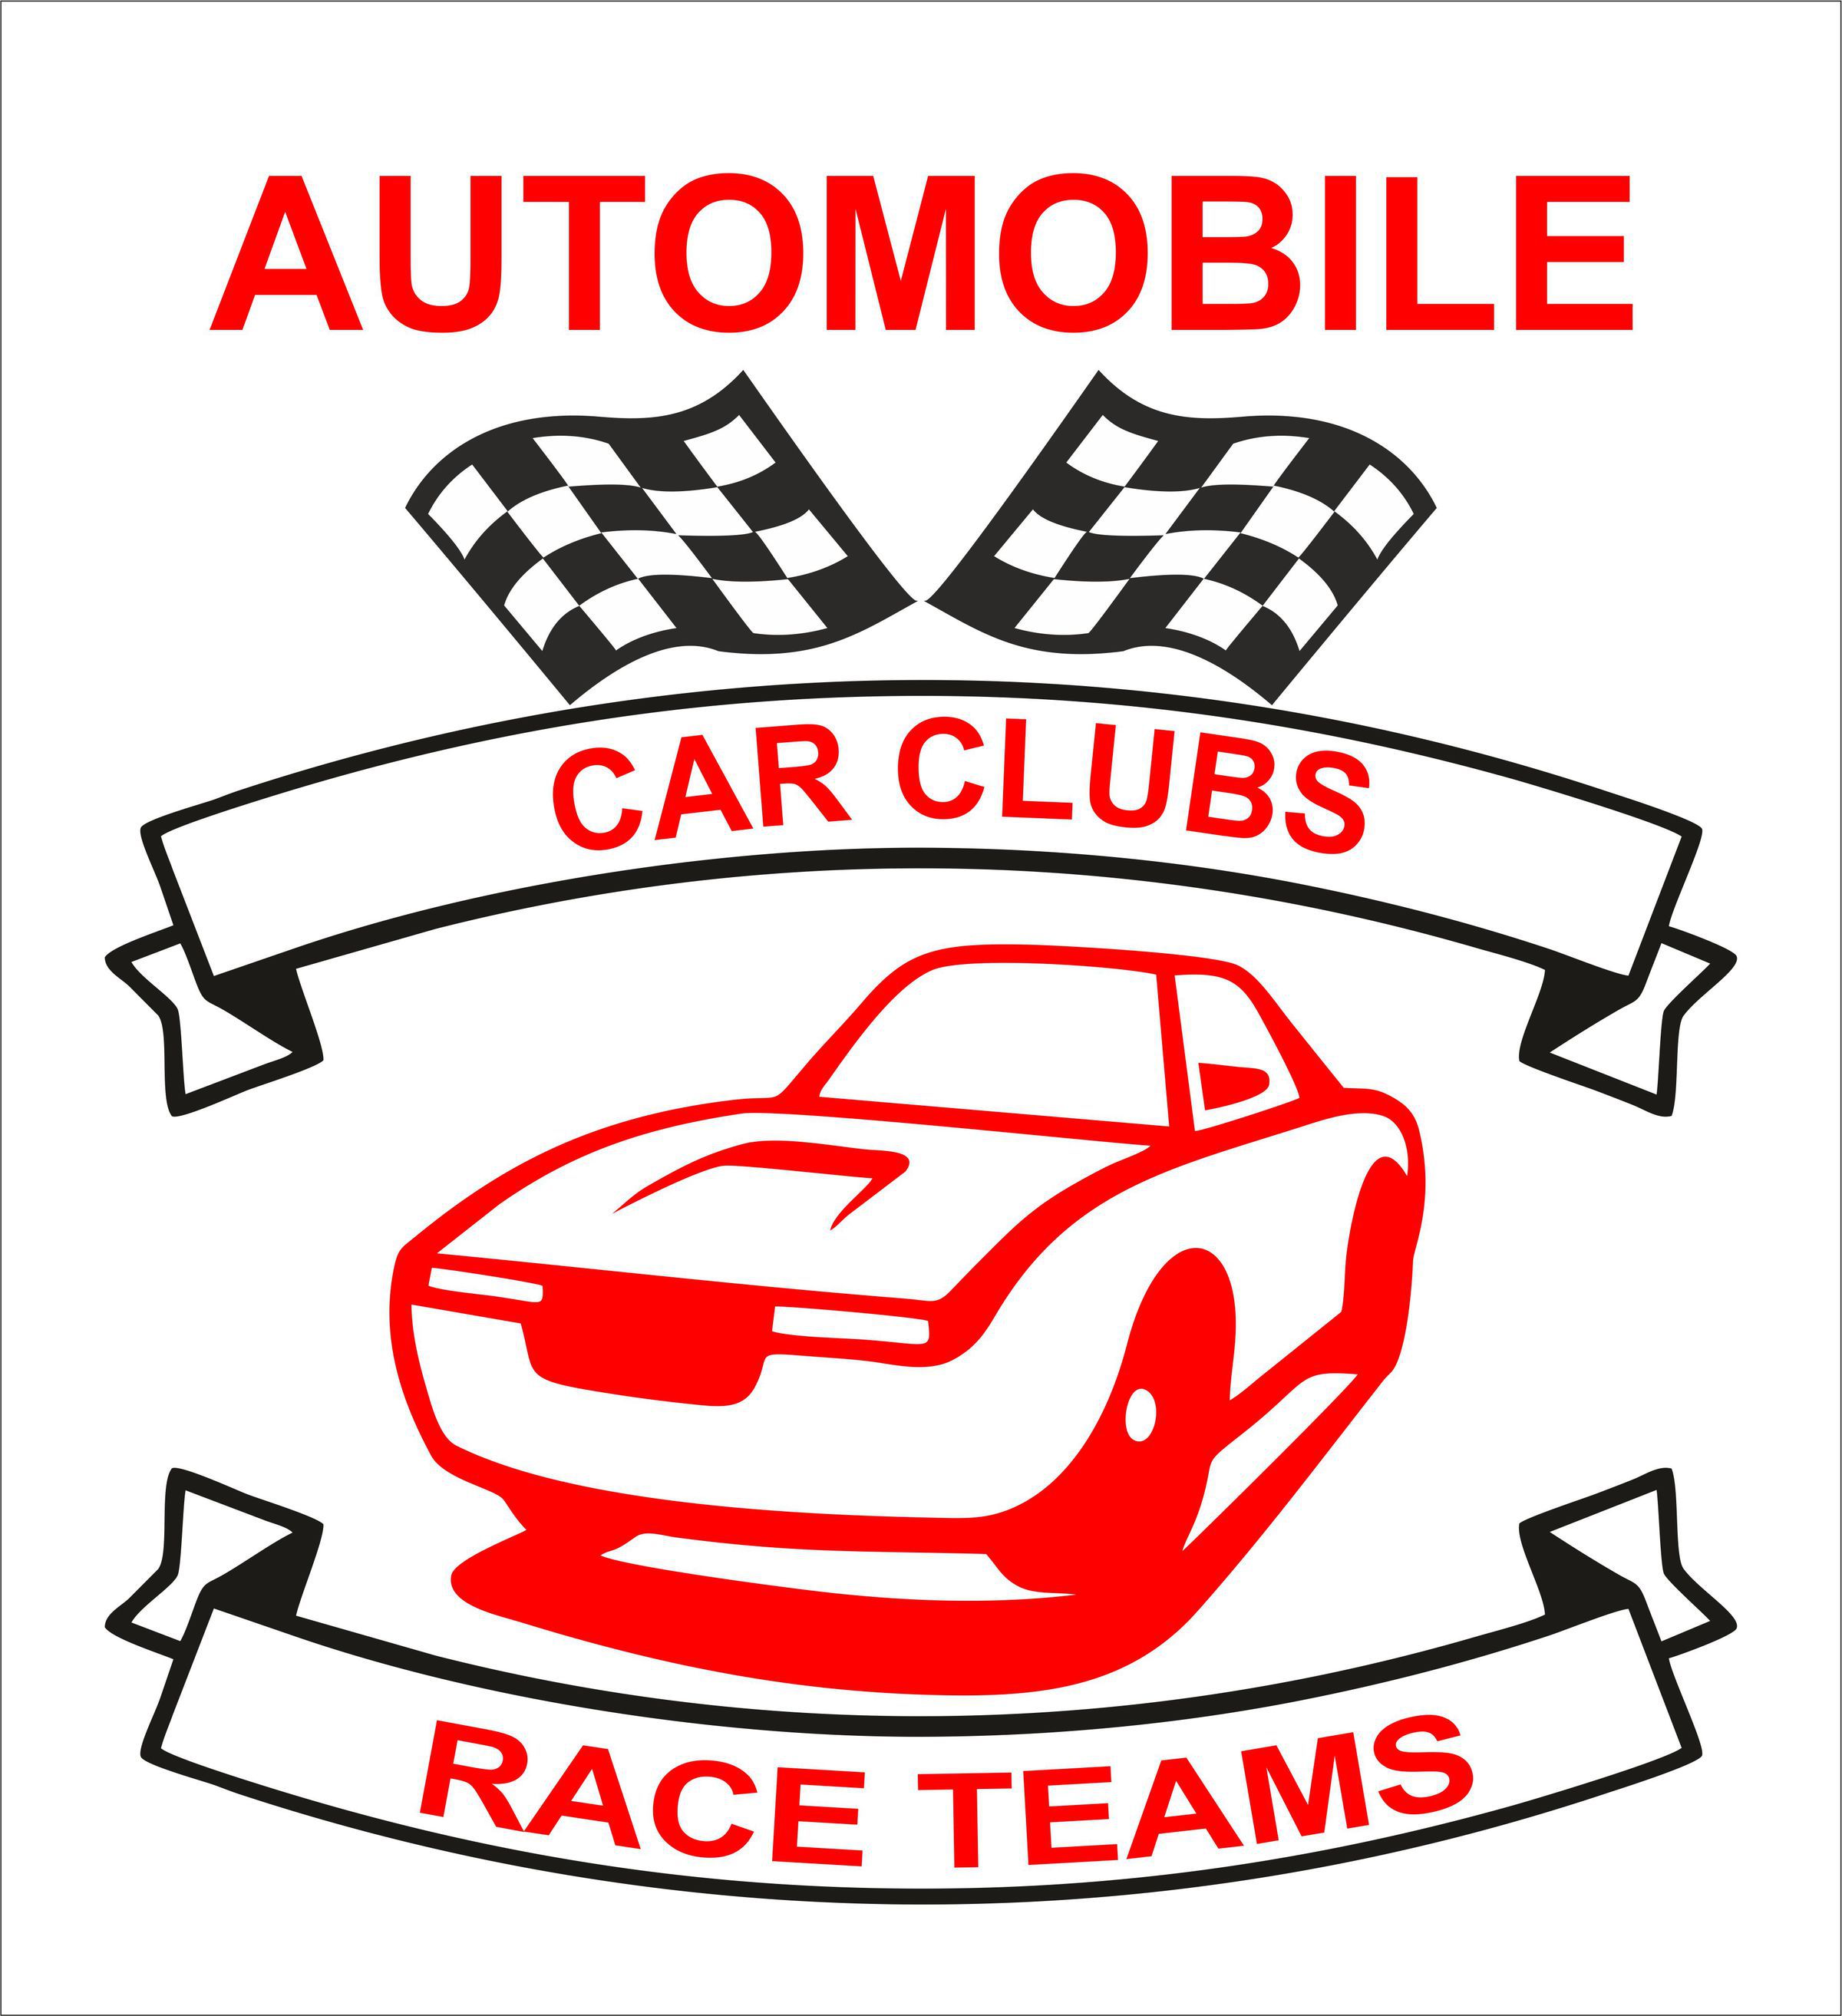 Car Clubs